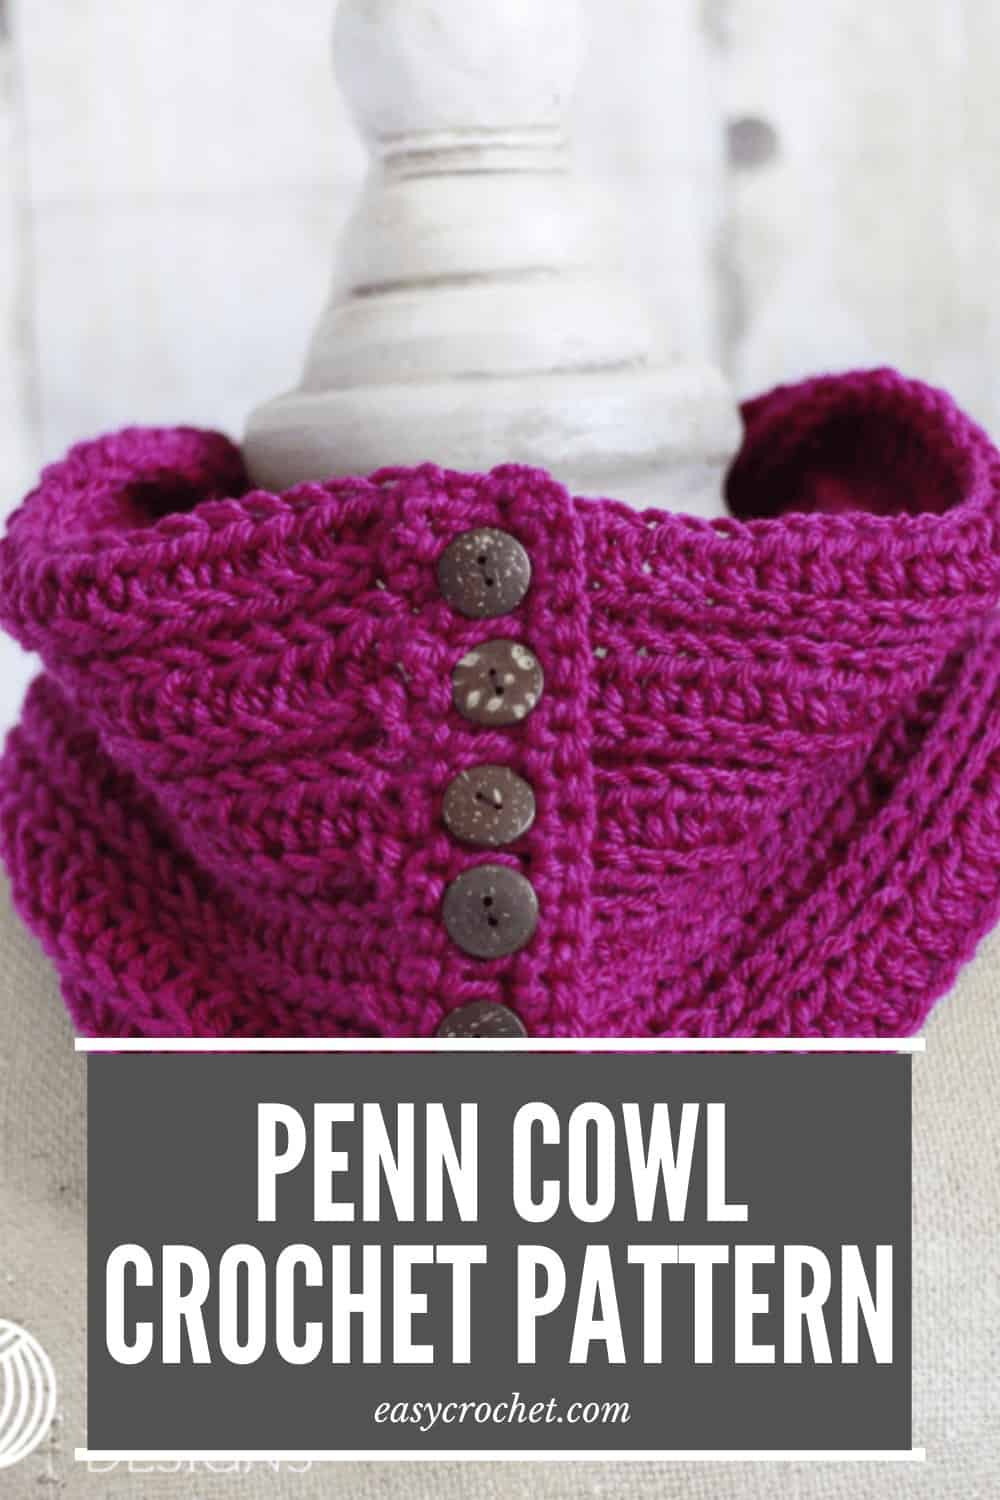 Penn Cowl Crochet Pattern - Free Crochet Pattern by Easy Crochet via @easycrochetcom